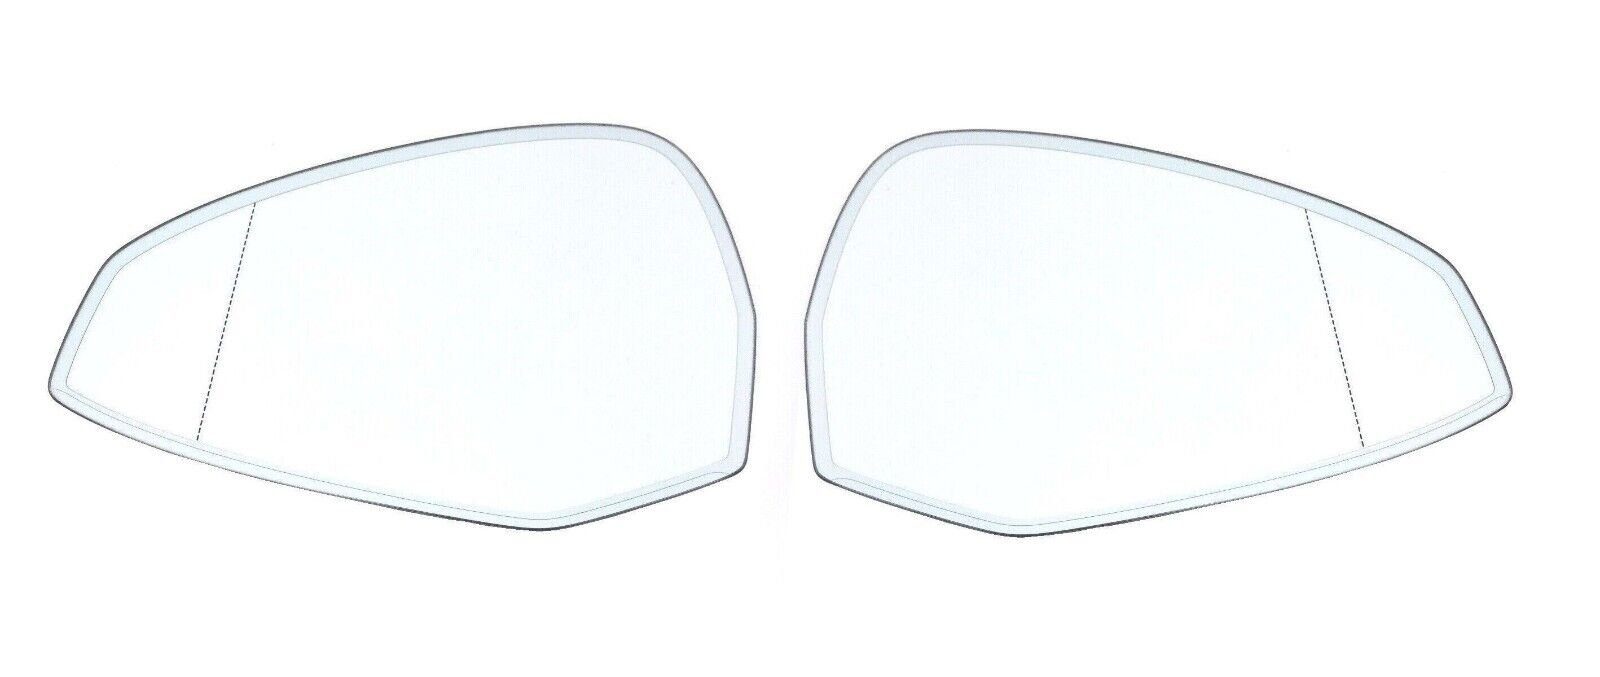 Außenspiegelglas (Spiegelglas) für AUDI A5 rechts und links